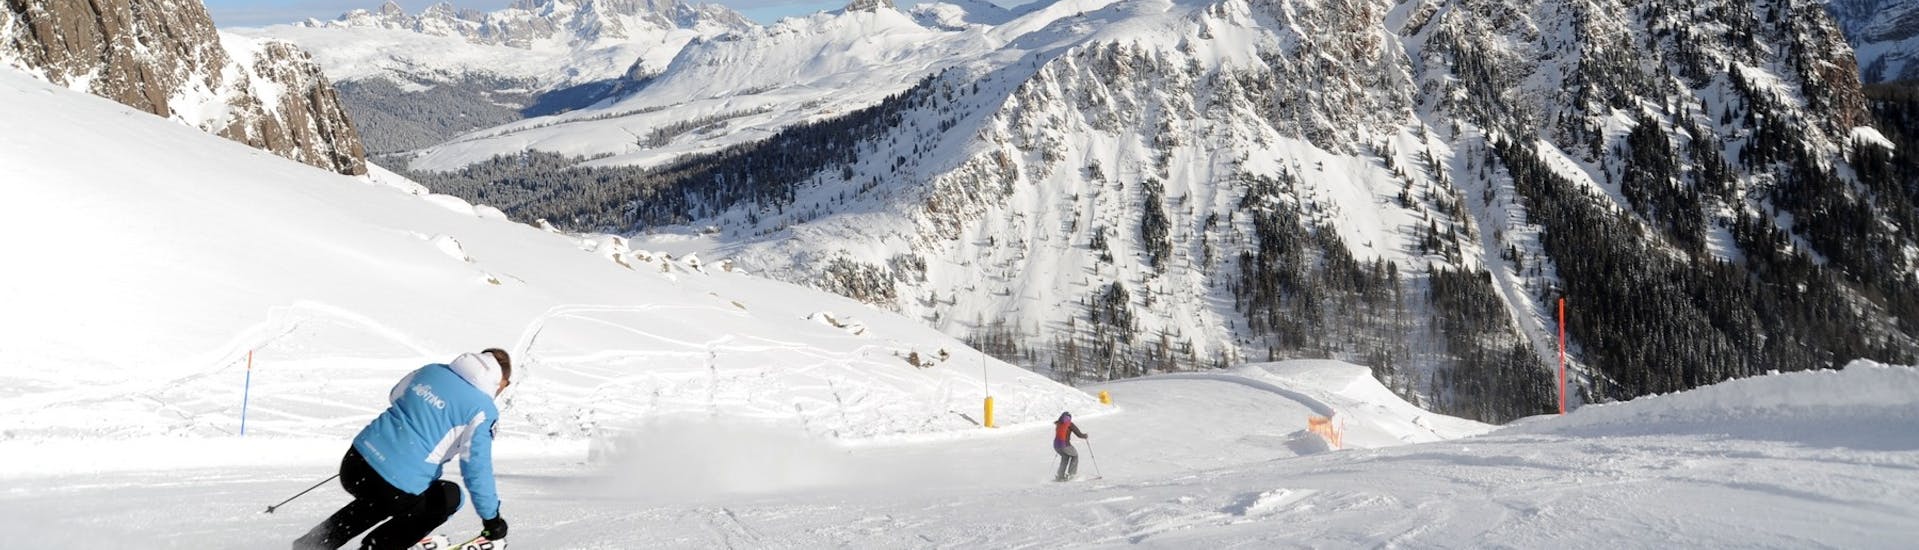 Skifahrer auf den Pisten von San Martino di Castrozza während des Privatskikurses für Erwachsene aller Levels mit der Scuola Italiana Sci Dolomiti San Martino di Castrozza.